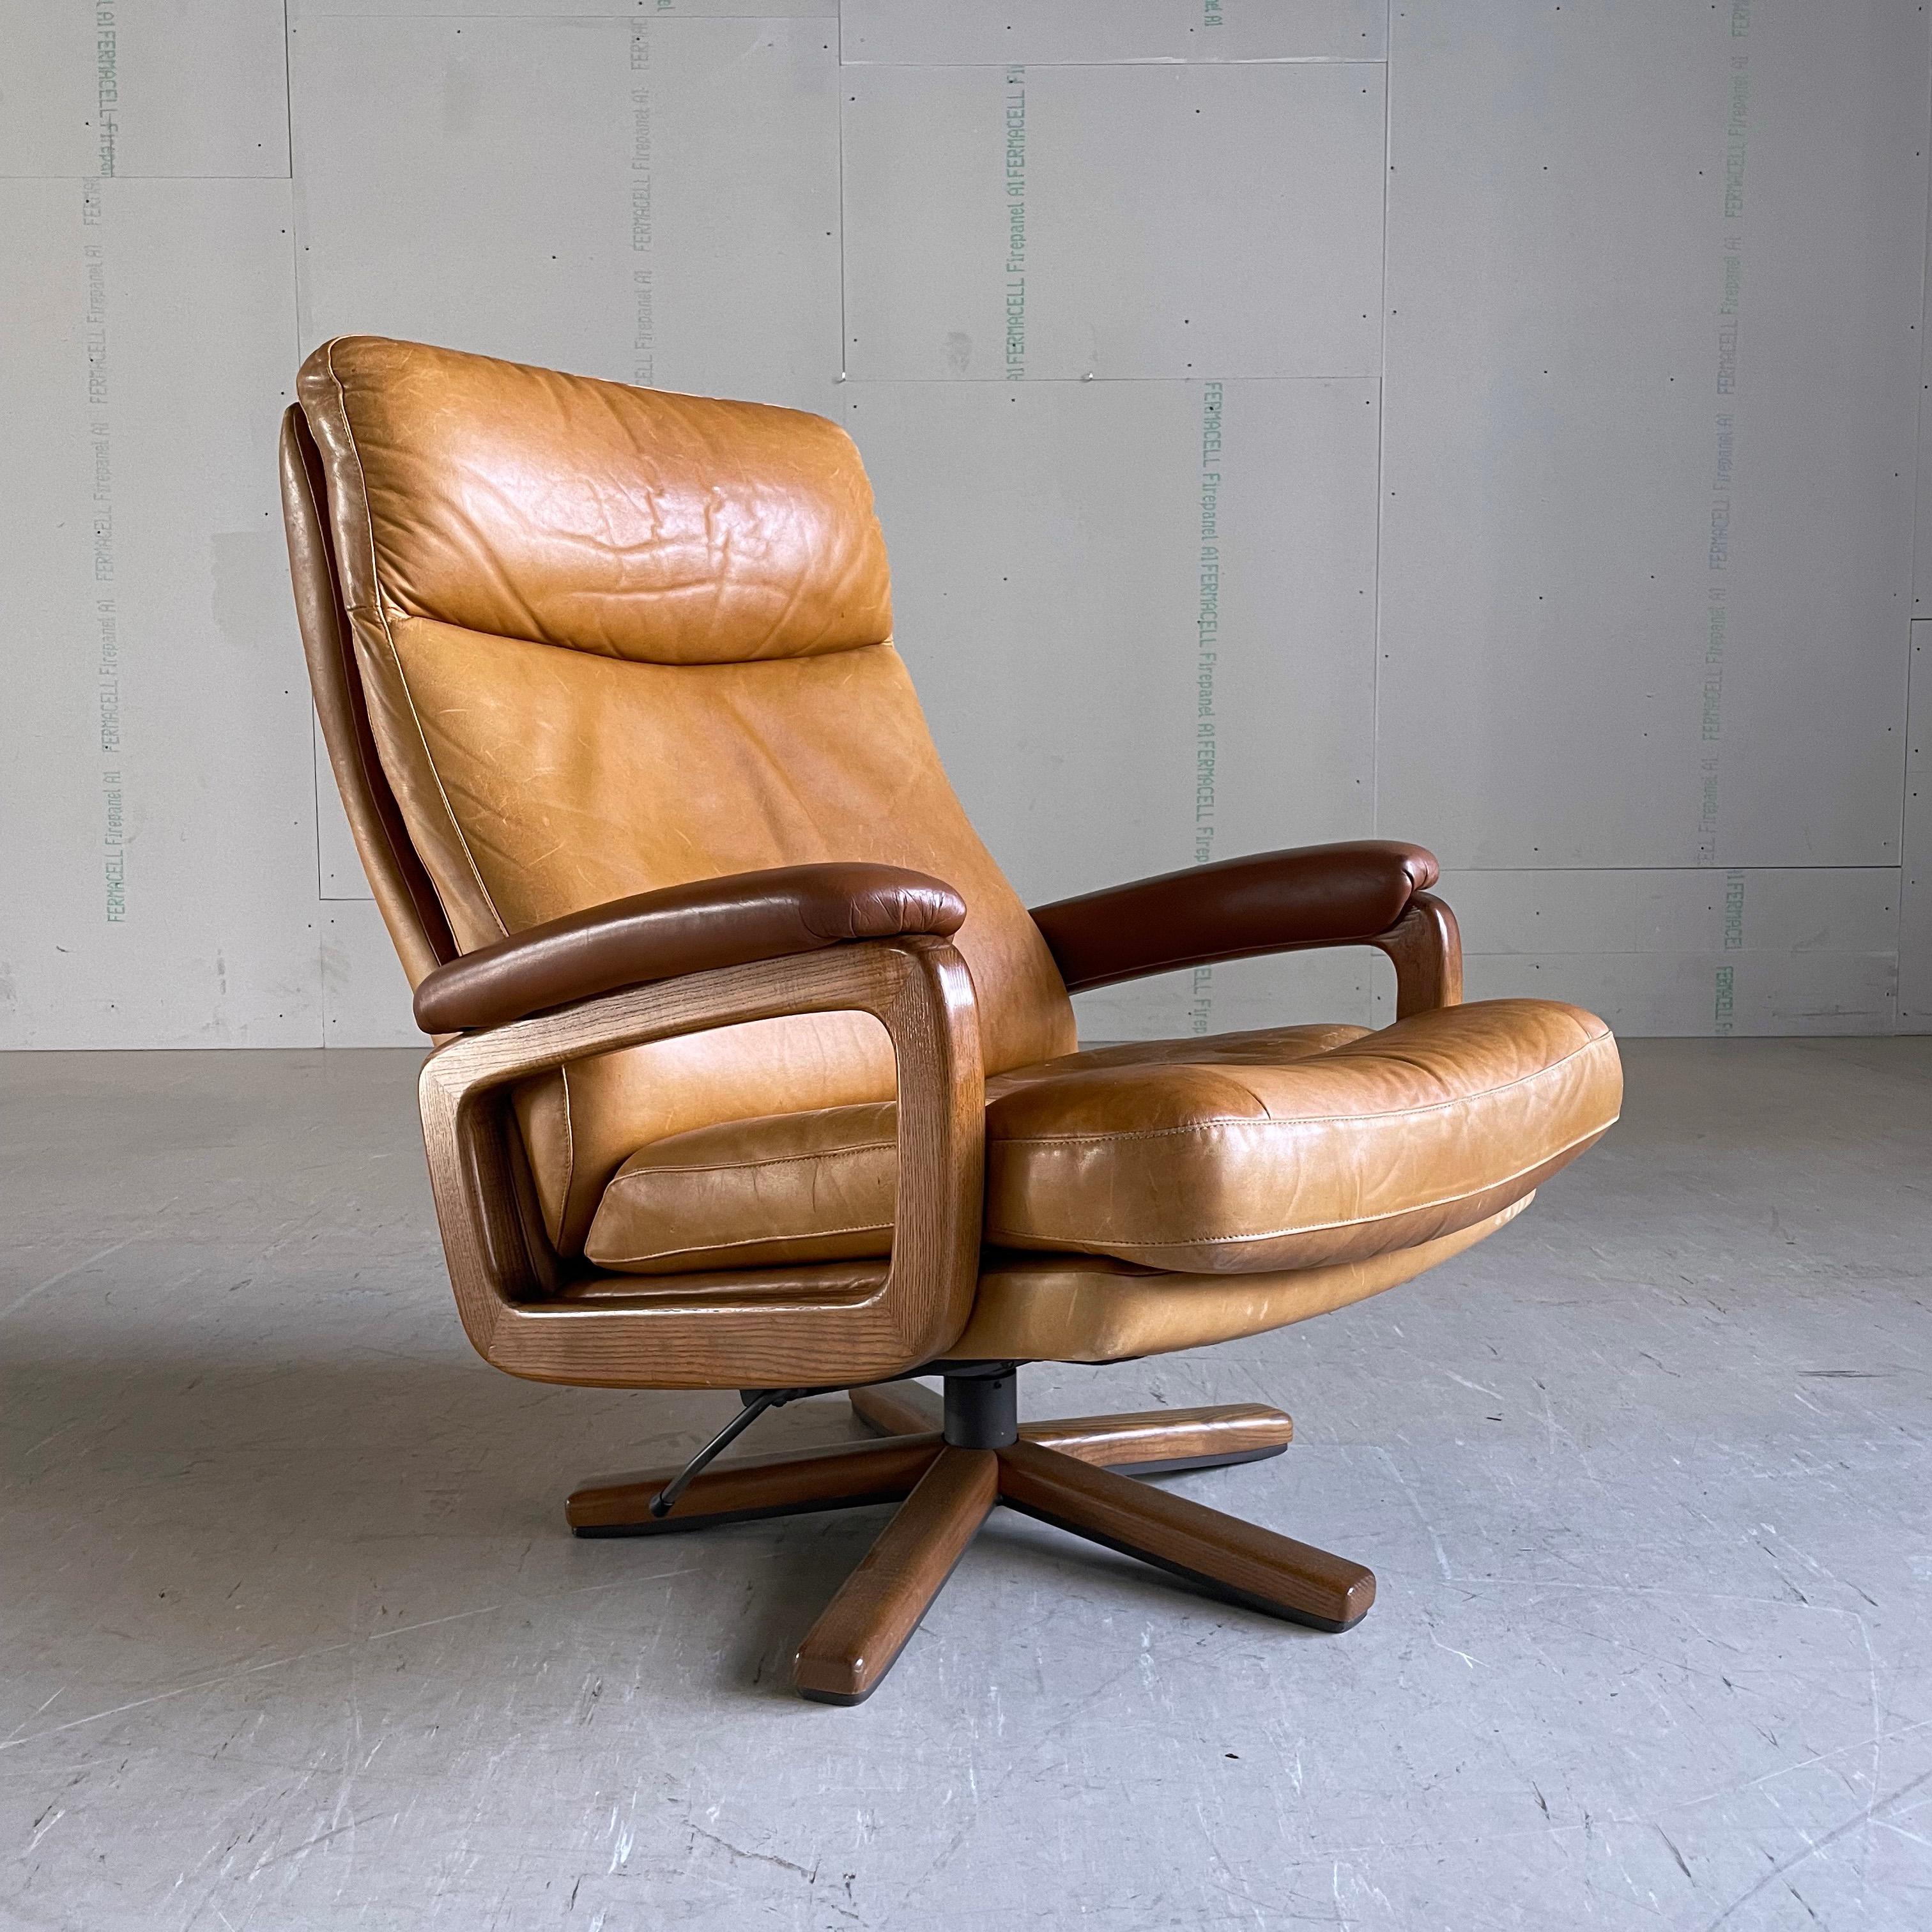 1960's Reclining Leder Lounge Chair in gegerbtem Leder. Drehbare Basis und Arme aus Eiche. Entworfen von André Vandenbeuck und hergestellt von Strässle, Schweiz.
Abmessungen: Höhe: 80 cm  Breite: 78cm  Tiefe: 70cm  Sitzhöhe: ca. 40cm.
Sowohl das